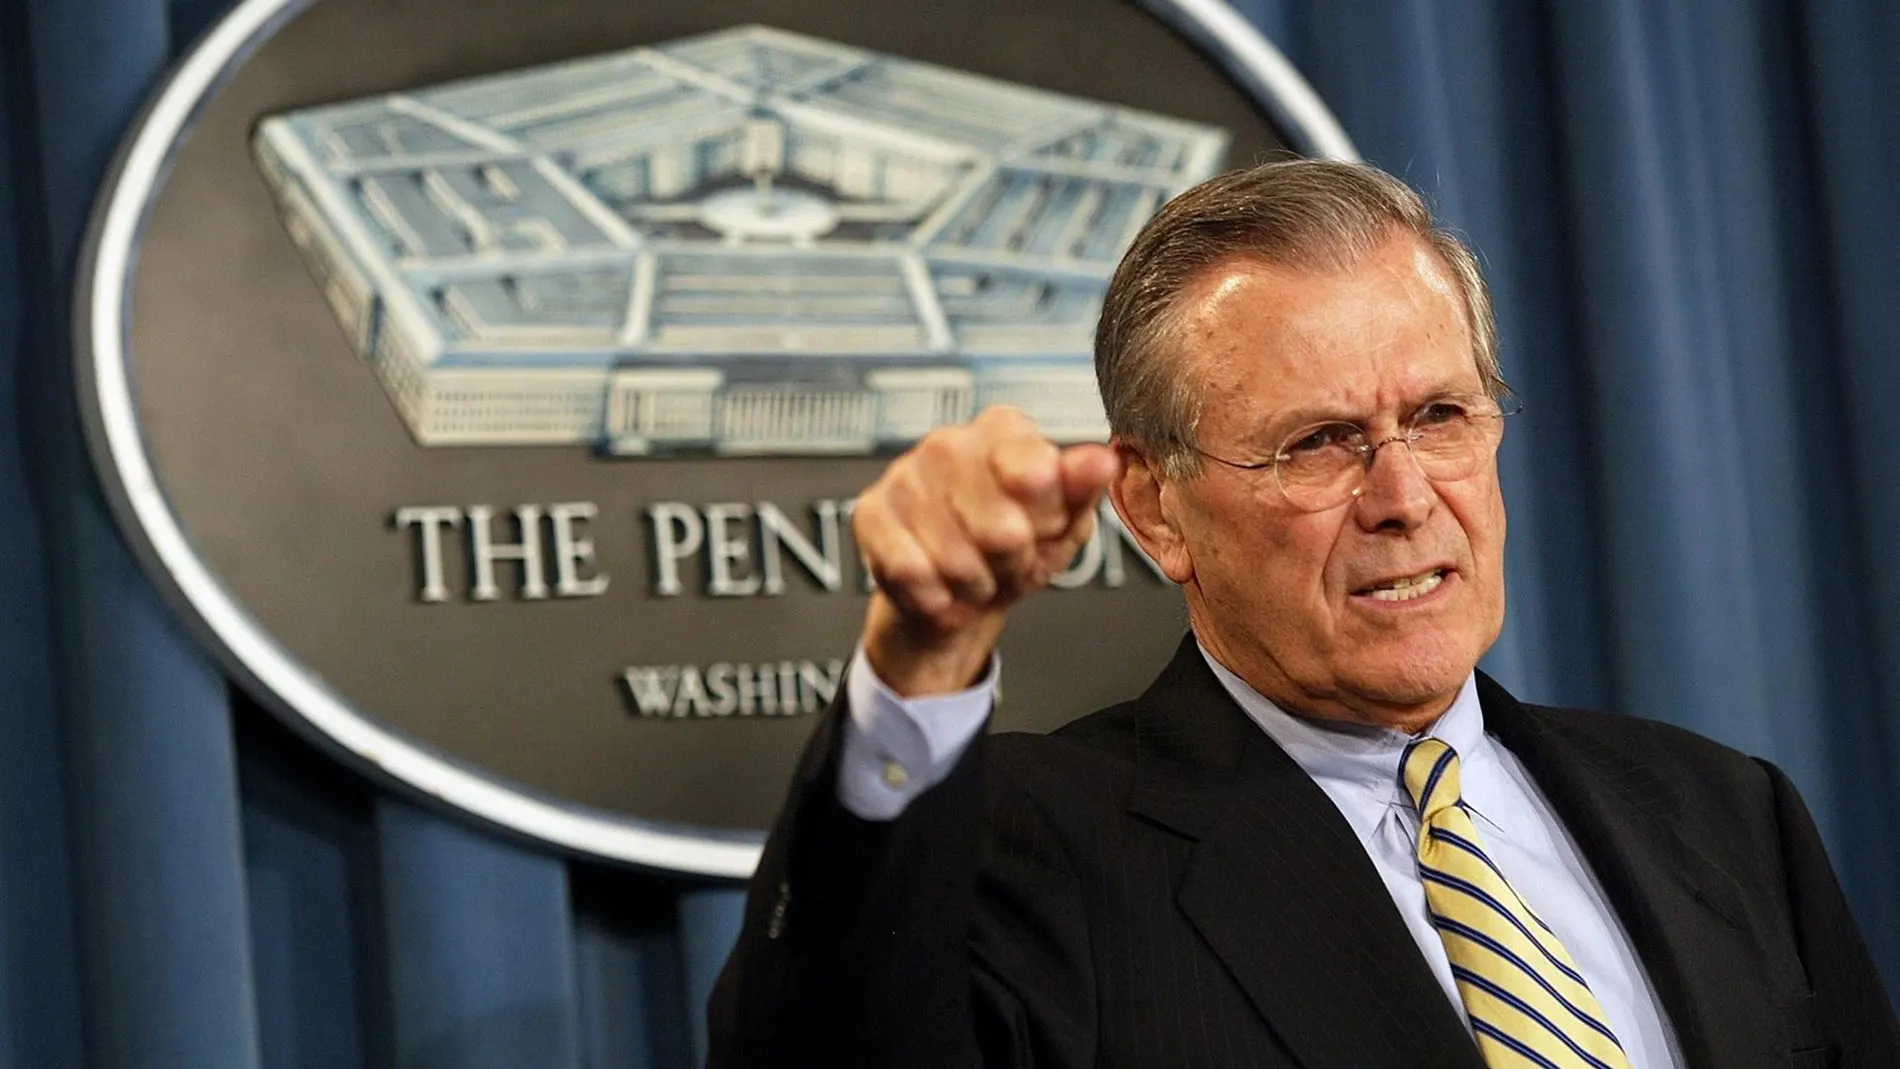 Muere Donald Rumsfeld, exsecretario de Defensa de EE.UU. y uno de los ideólogos de la guerra de Irak, a los 88 años